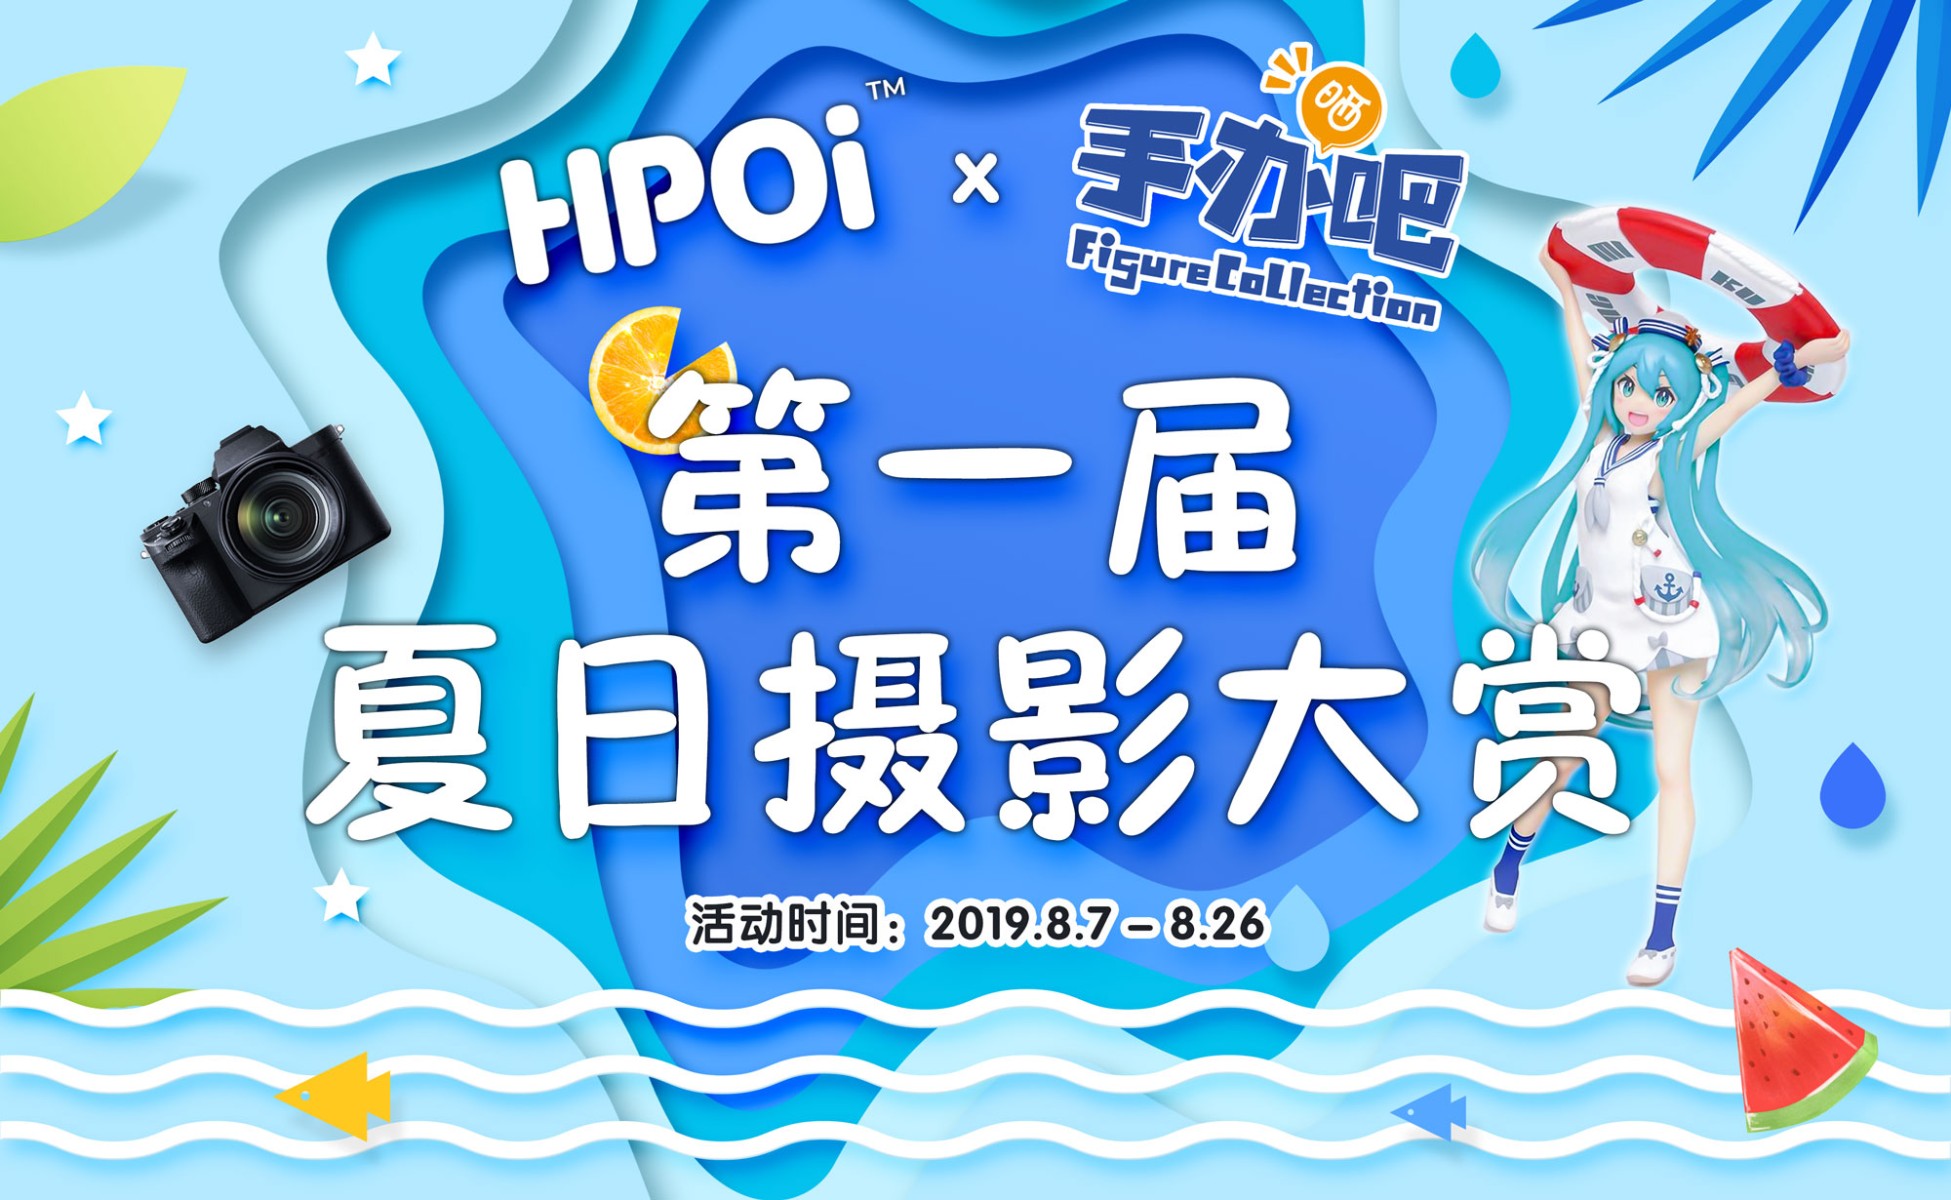 【活动】Hpoi&手办吧夏日摄影大赏  获奖名单揭晓！！快来围观！